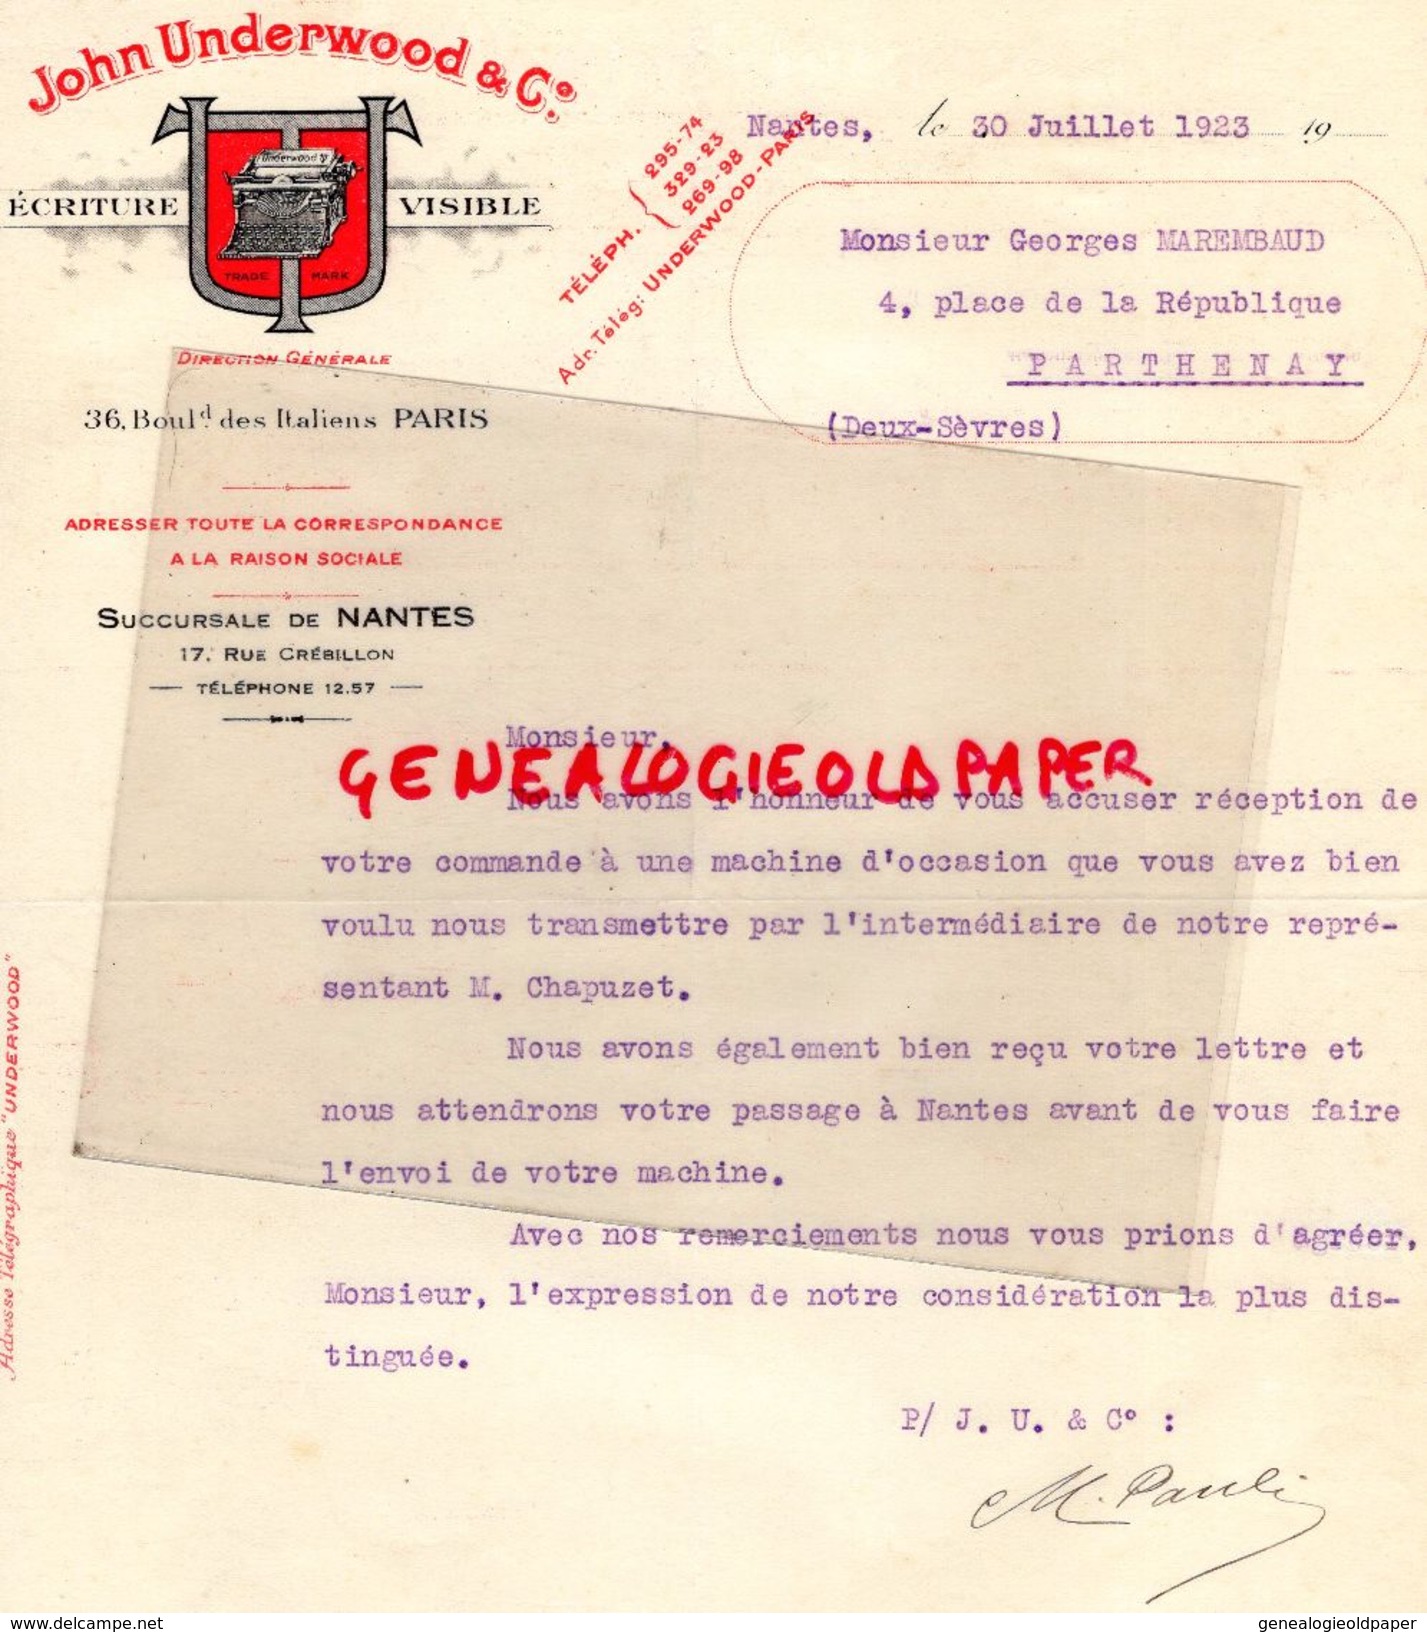 44- NANTES- FACTURE JOHN UNDERWOOD-ECRITURE VISIBLE-MACHINE A ECRIRE-36 BD-ITALIENS PARIS- 17 RUE CREBILLON-1923 - Drukkerij & Papieren